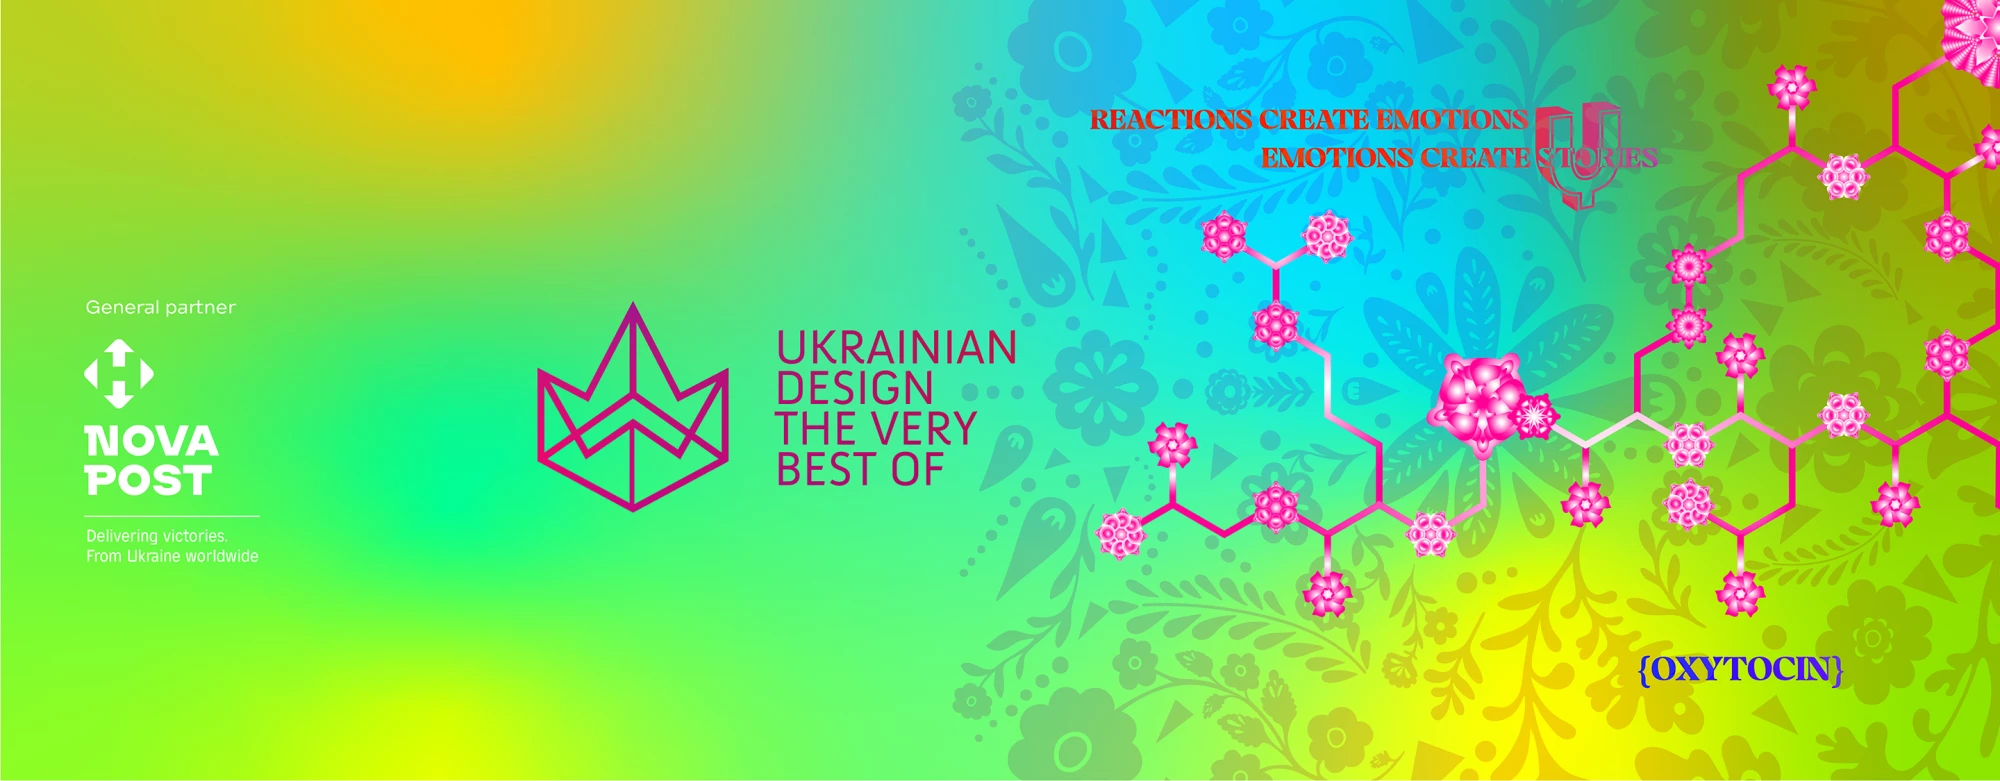 Nazzareno Sifo tuomarina Ukrainian design: The very best of -kilpailussa